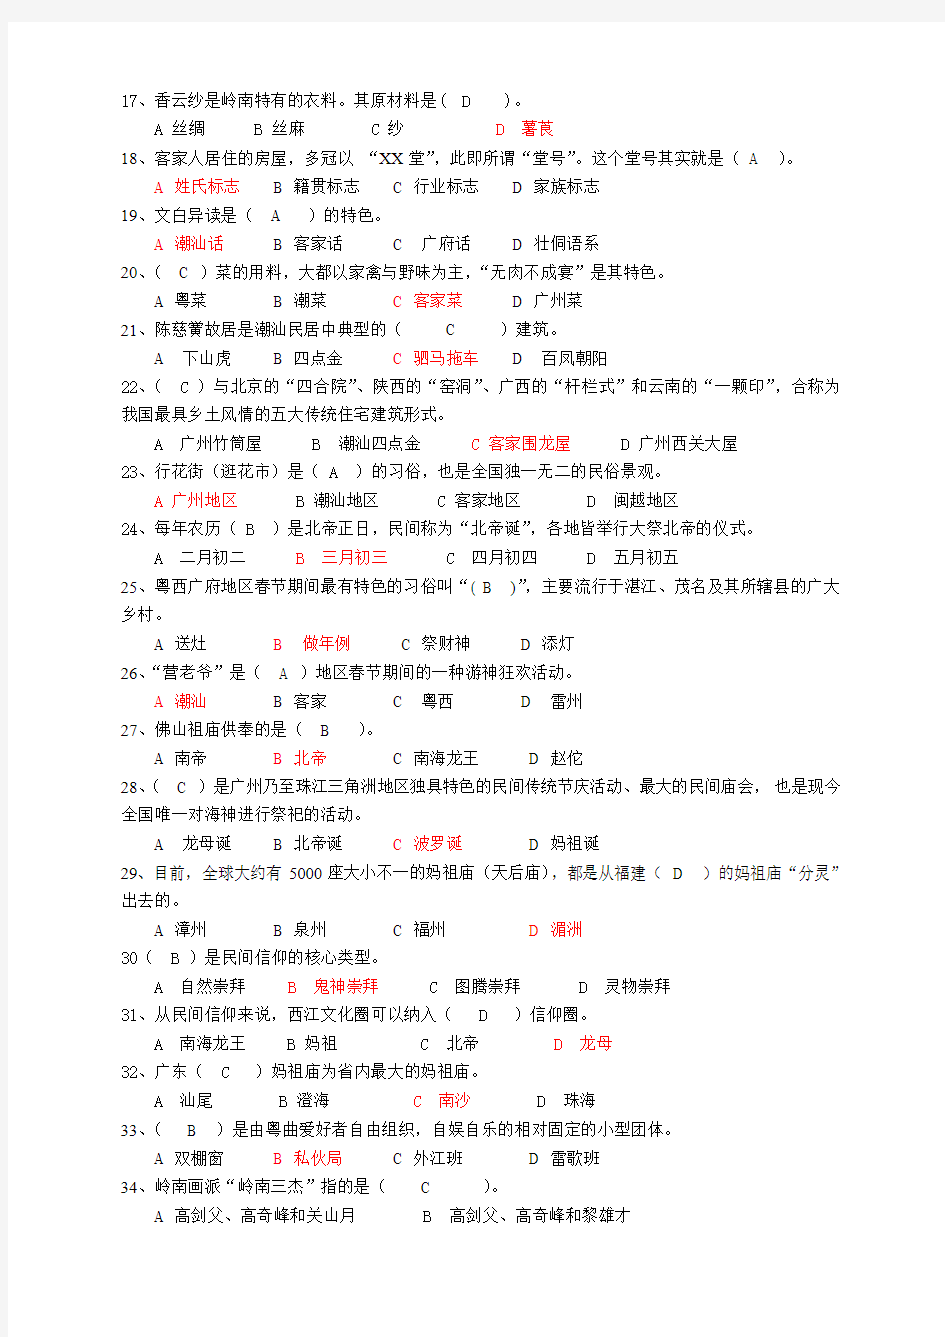 2015年1月电大期末考试广东省管课程-地域文化